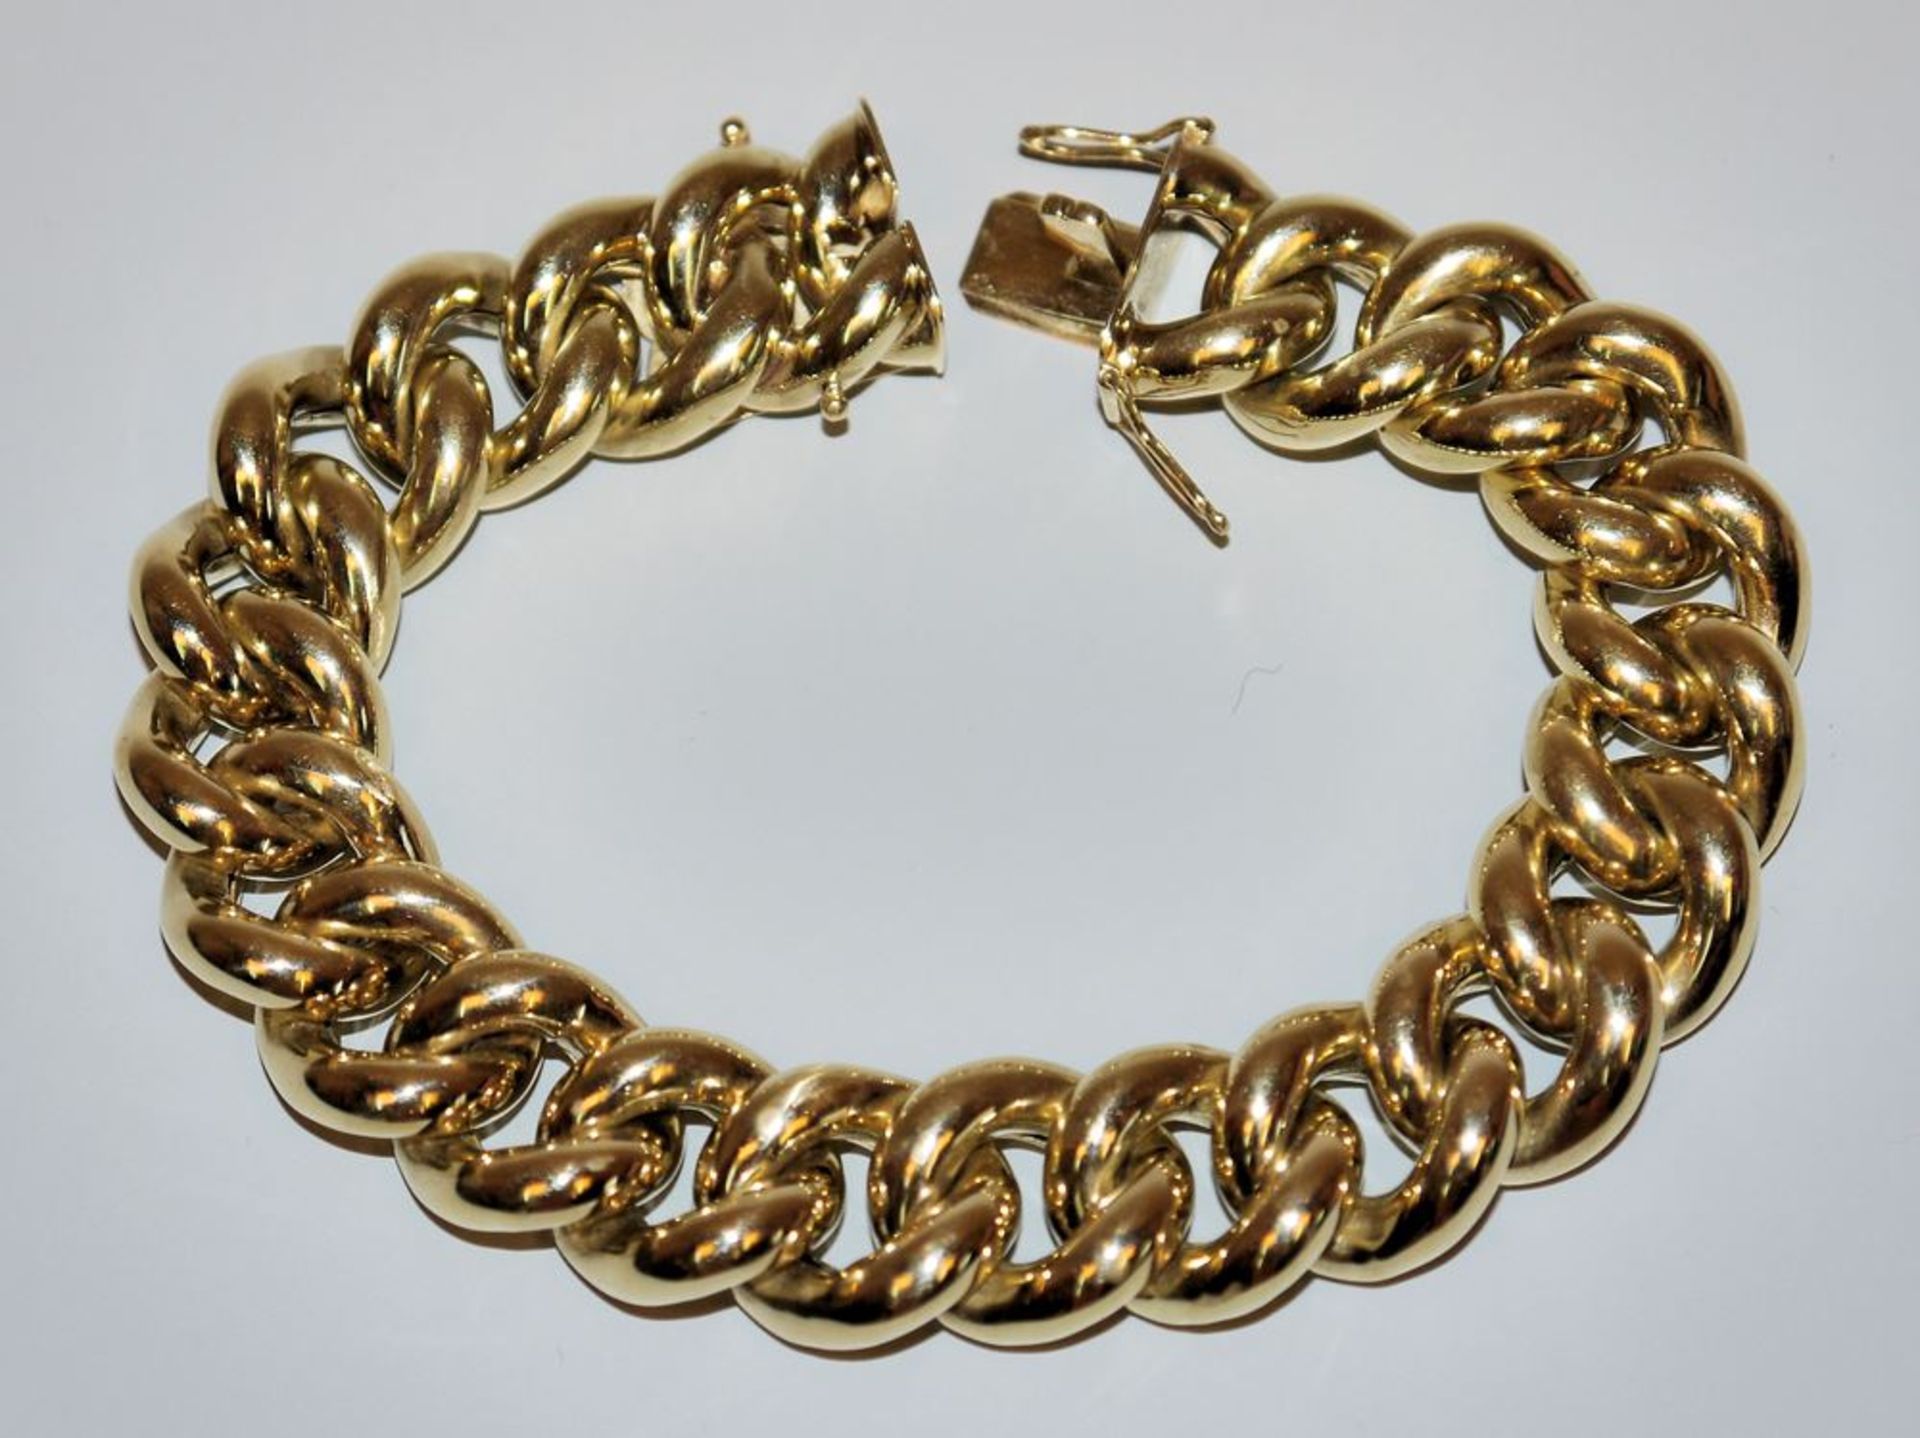 Armour bracelet, gold